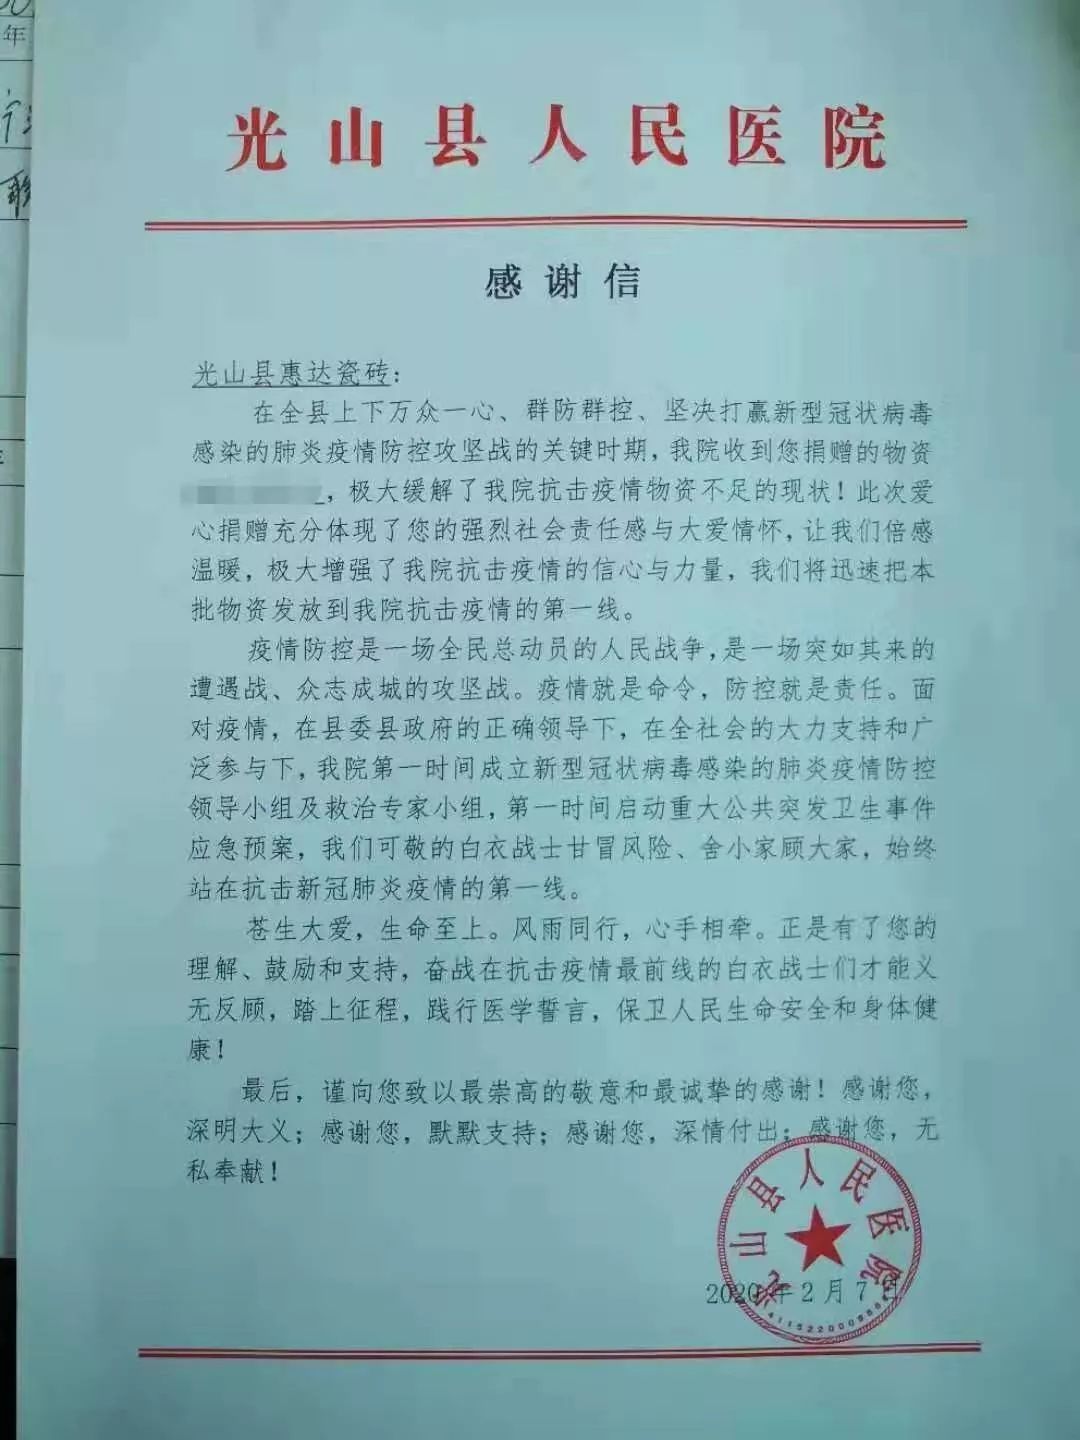 品牌的力量|惠达瓷砖《武汉加油》公益广告在北京投放(图13)